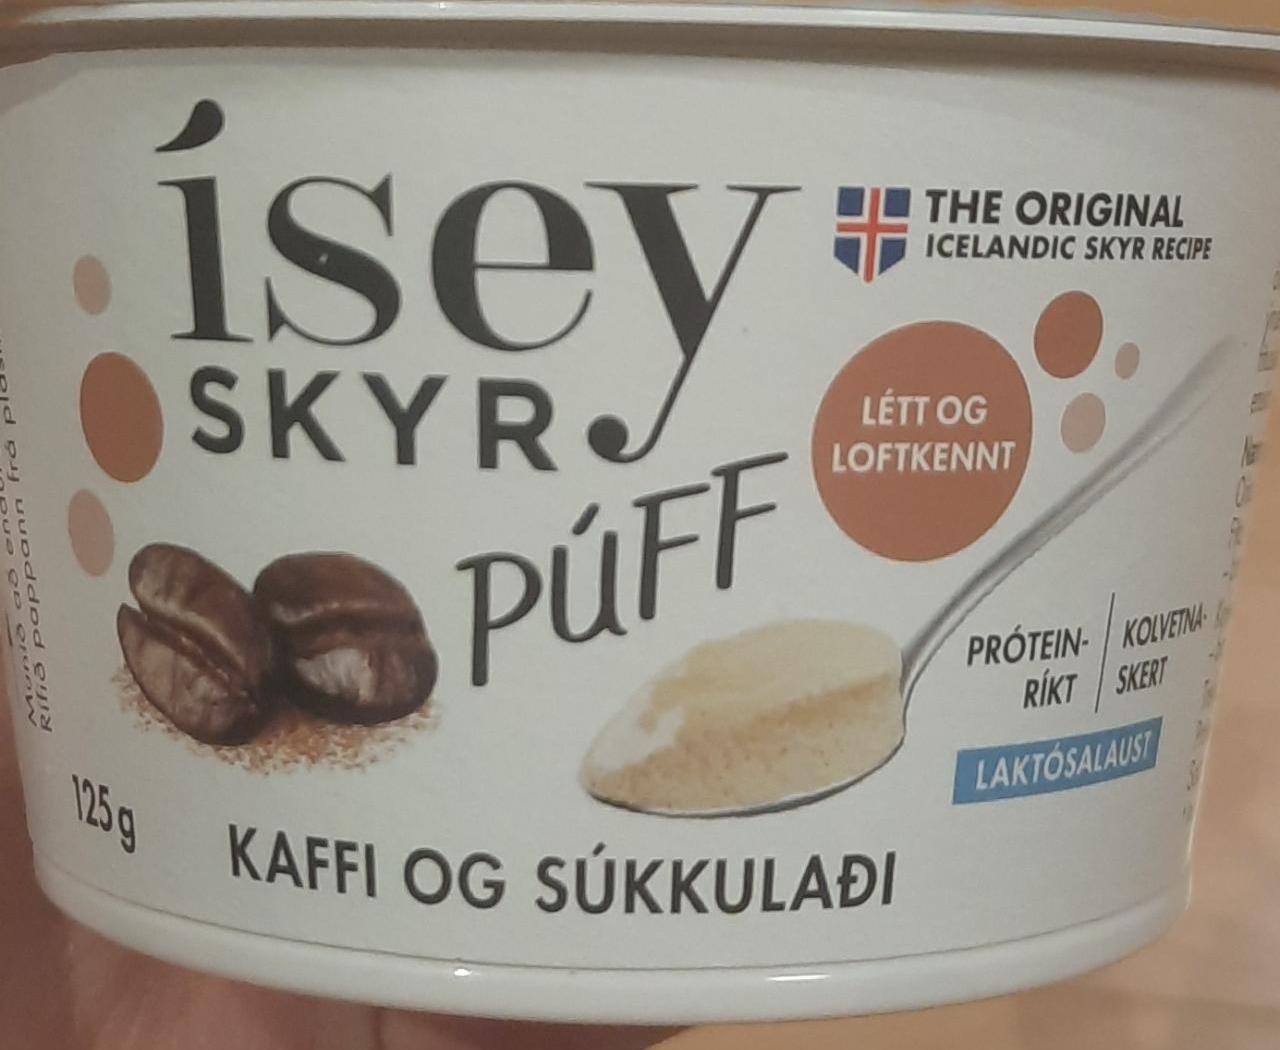 Фото - Púff kaffi og súkkulaði Ísey Skyr